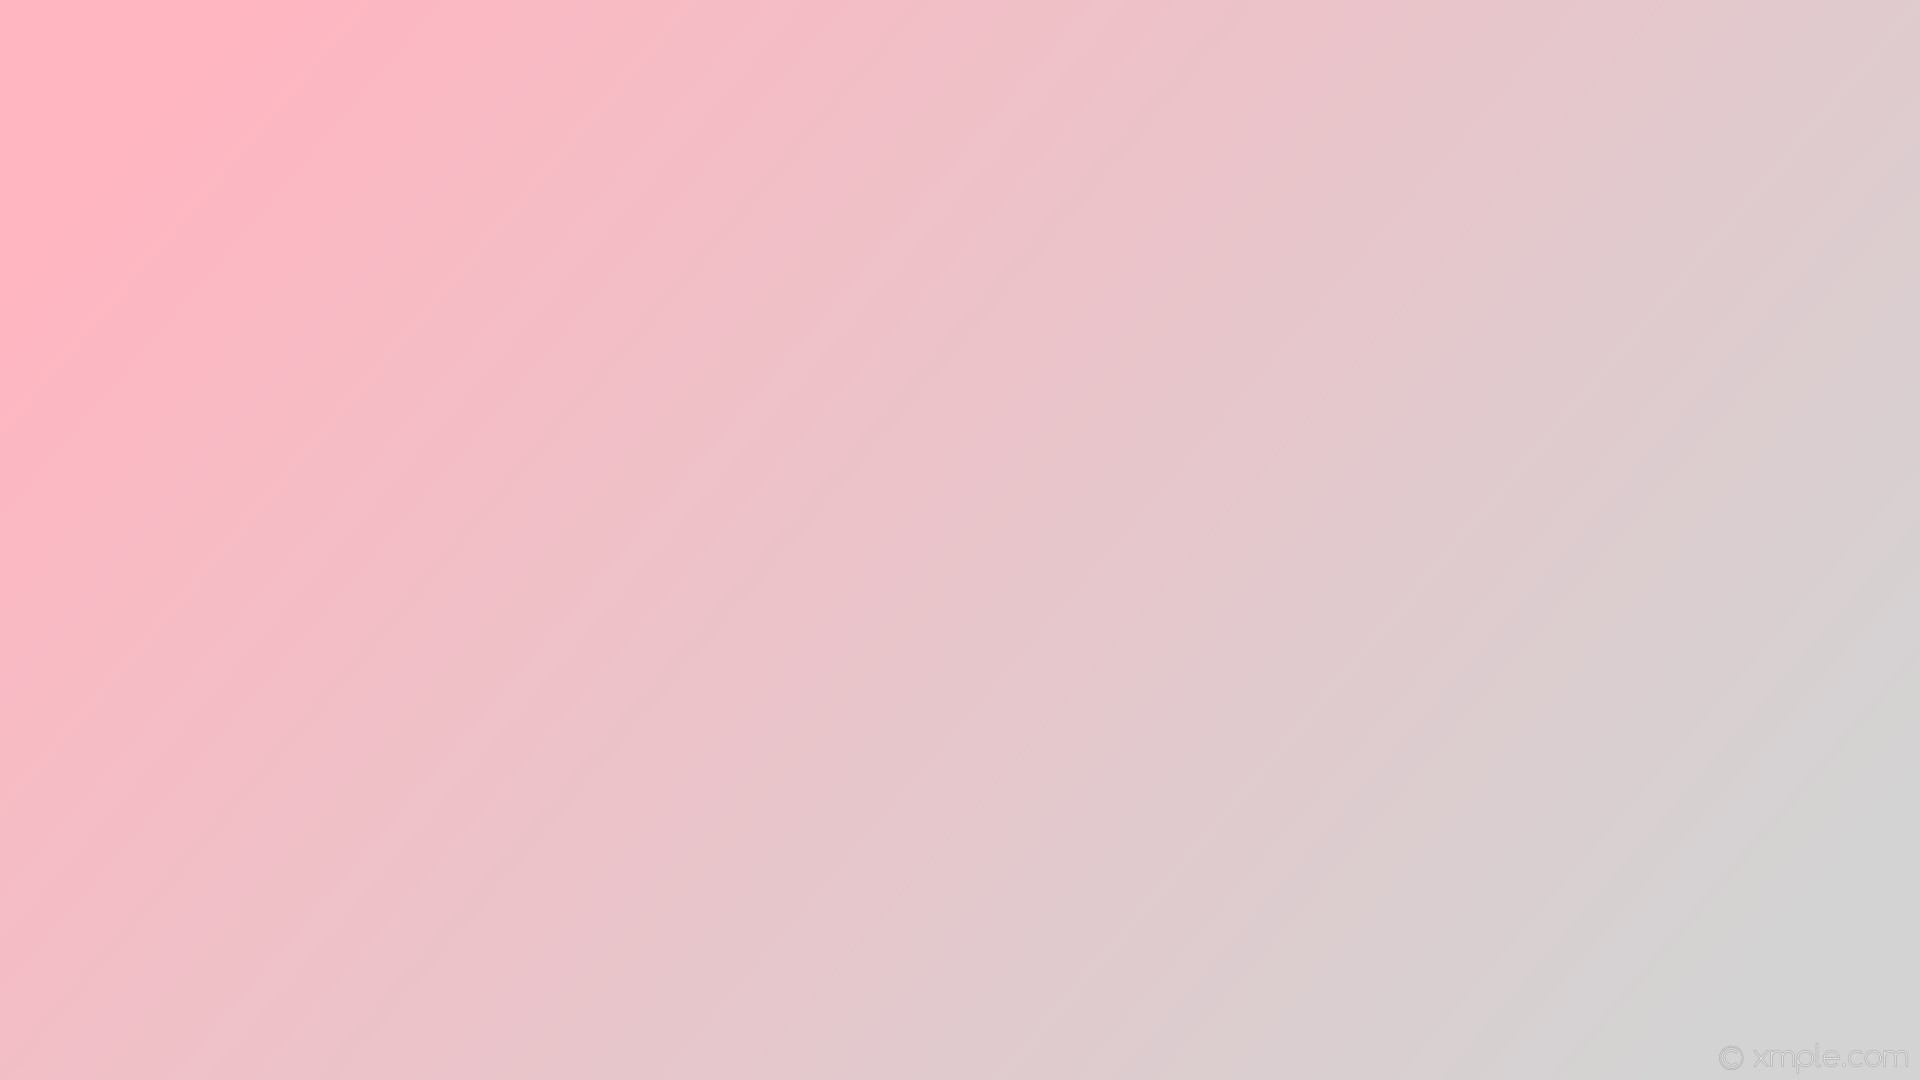 1920x1080 wallpaper gradient pink linear grey light gray light pink #d3d3d3 #ffb6c1  345Â°